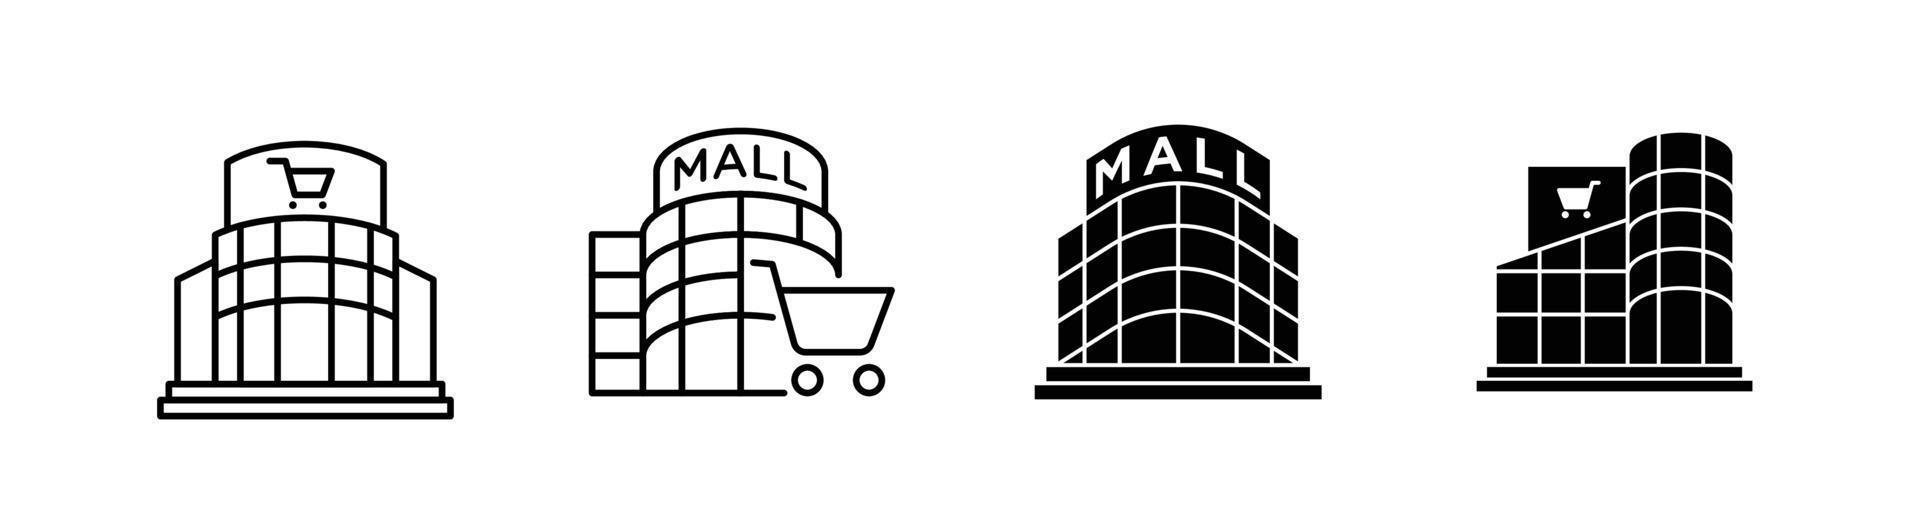 elemento de design de ícone de shopping ou centro comercial adequado para site, design de impressão ou aplicativo vetor